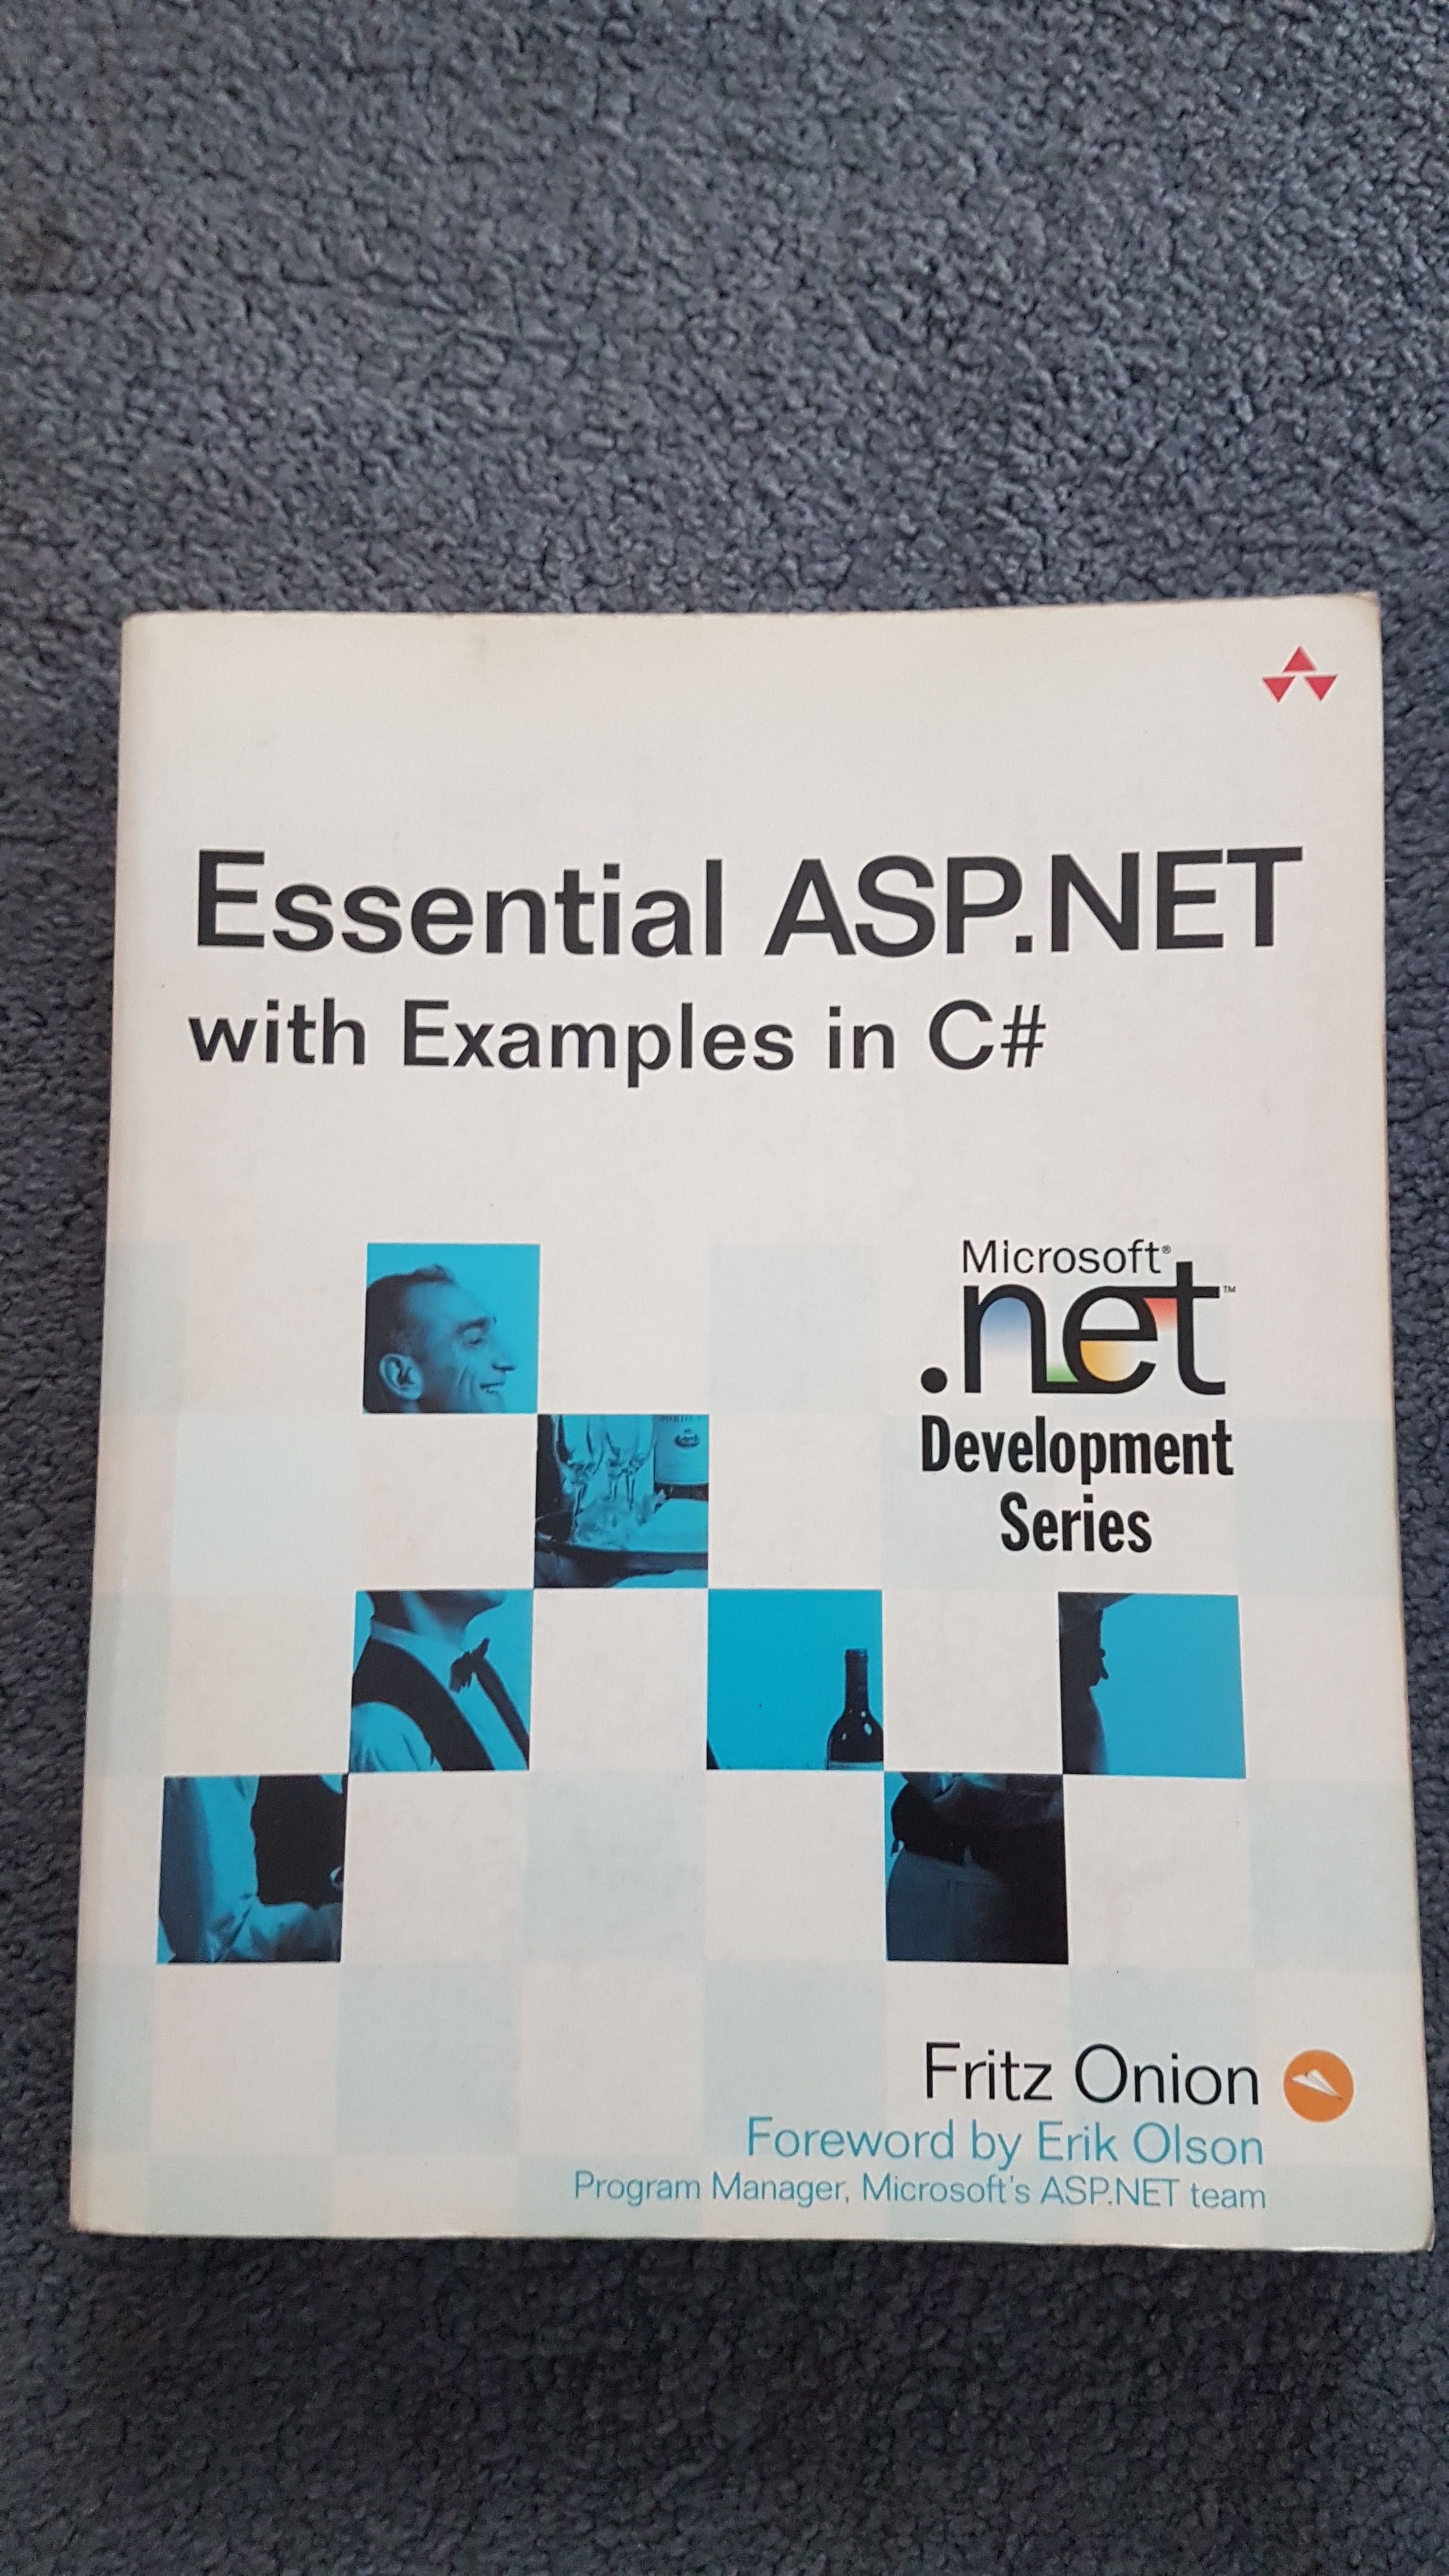 Livro "Essential ASP.NET" de Fritz Onion